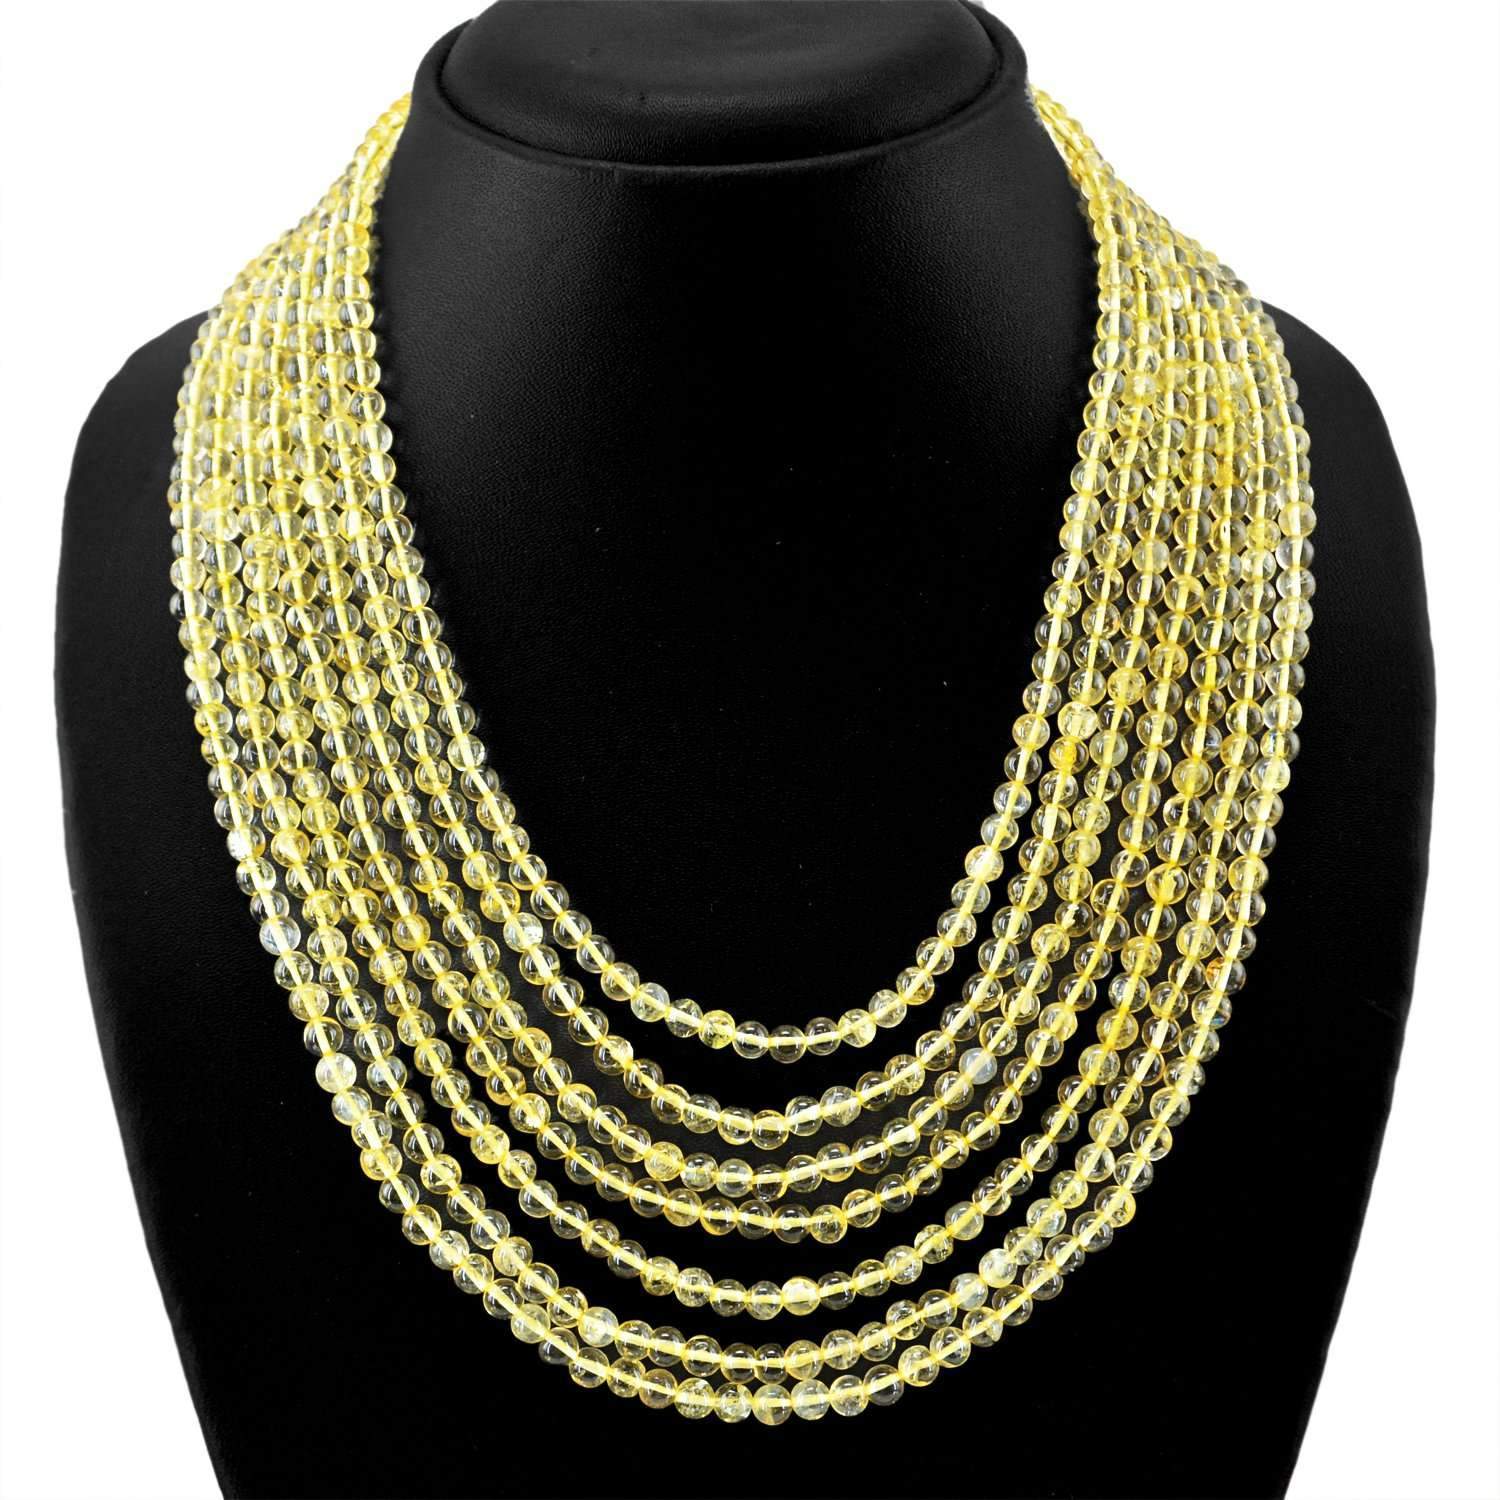 gemsmore:Yellow Citrine Necklace 7 Strand Natural Round Shape Beads